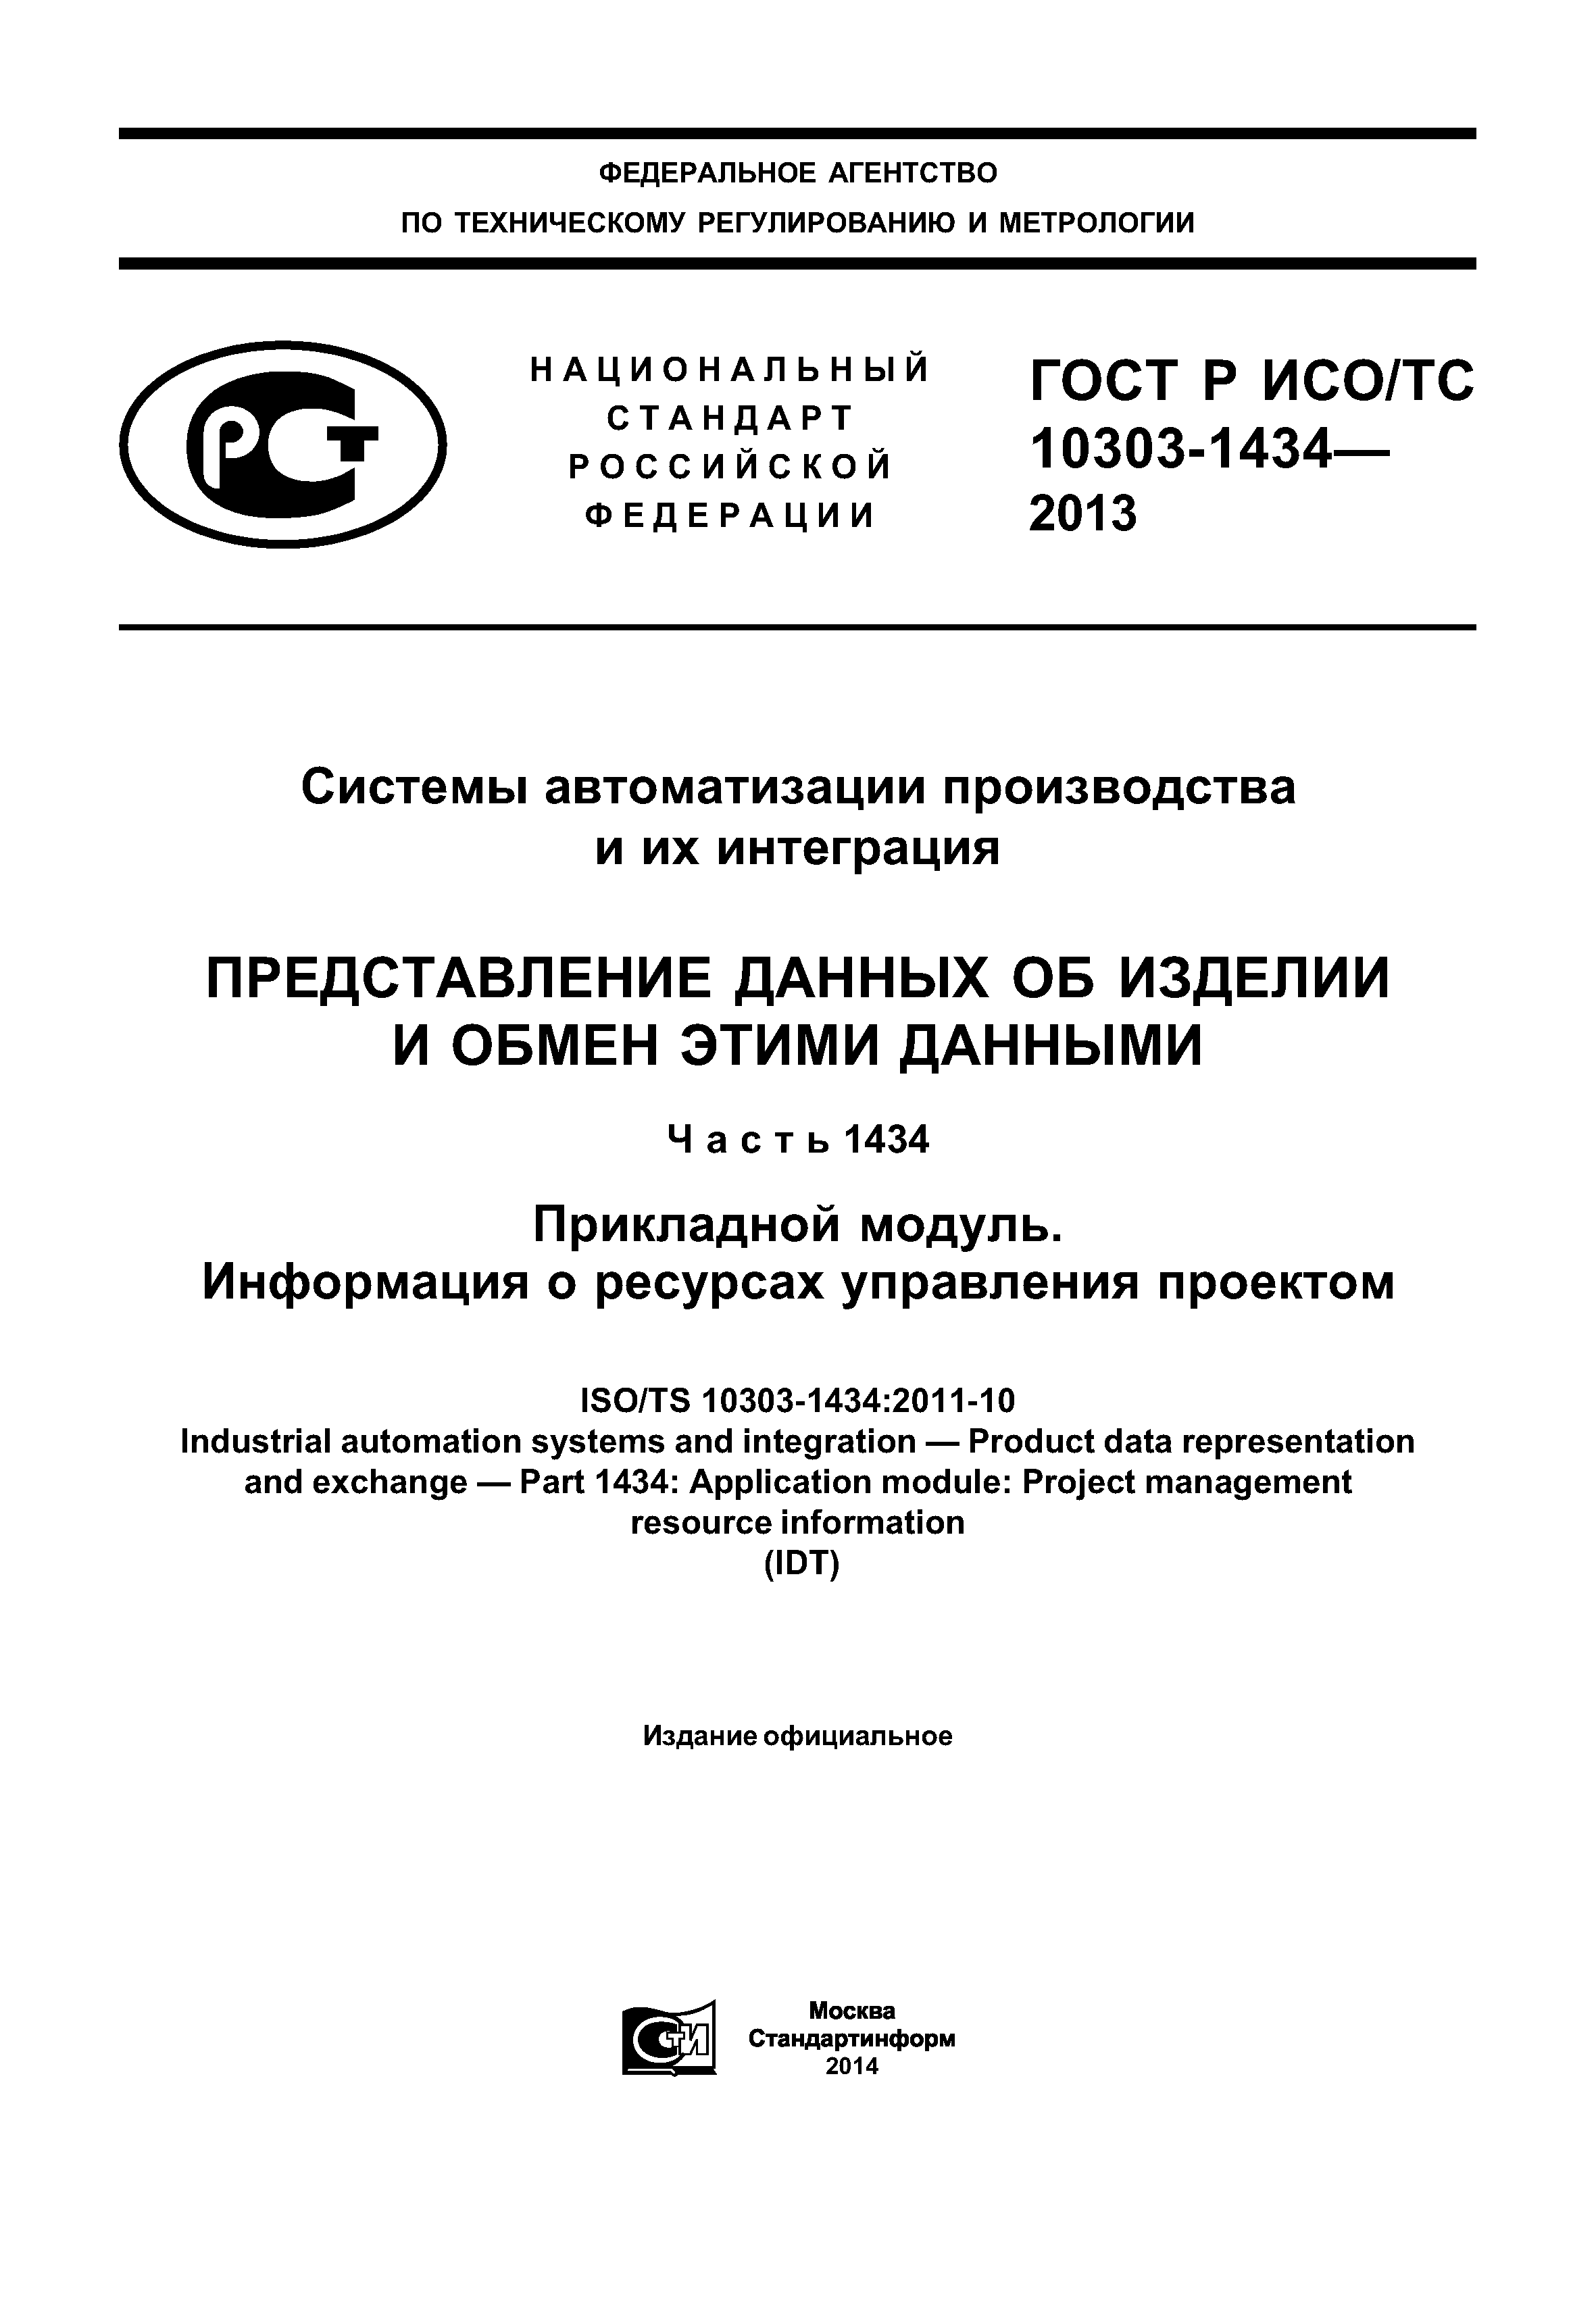 ГОСТ Р ИСО/ТС 10303-1434-2013